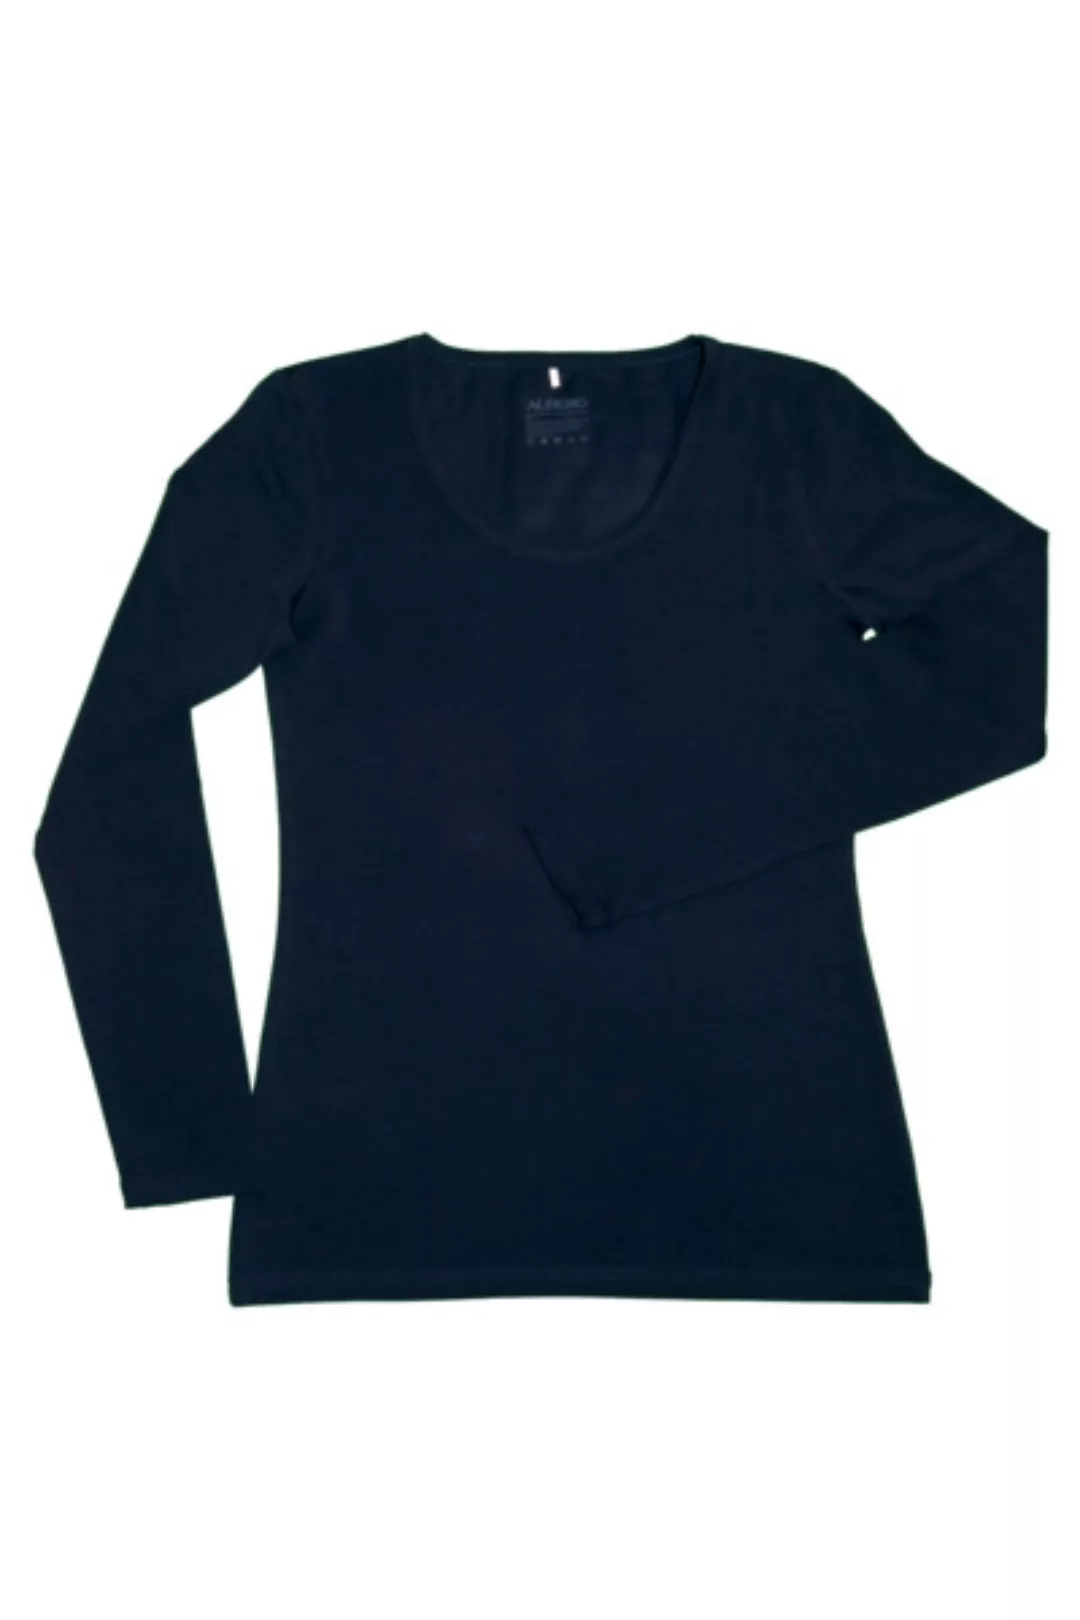 Damen Langarmshirt Rundhals 5 Farben Bio-baumwolle T-shirt 4412 günstig online kaufen